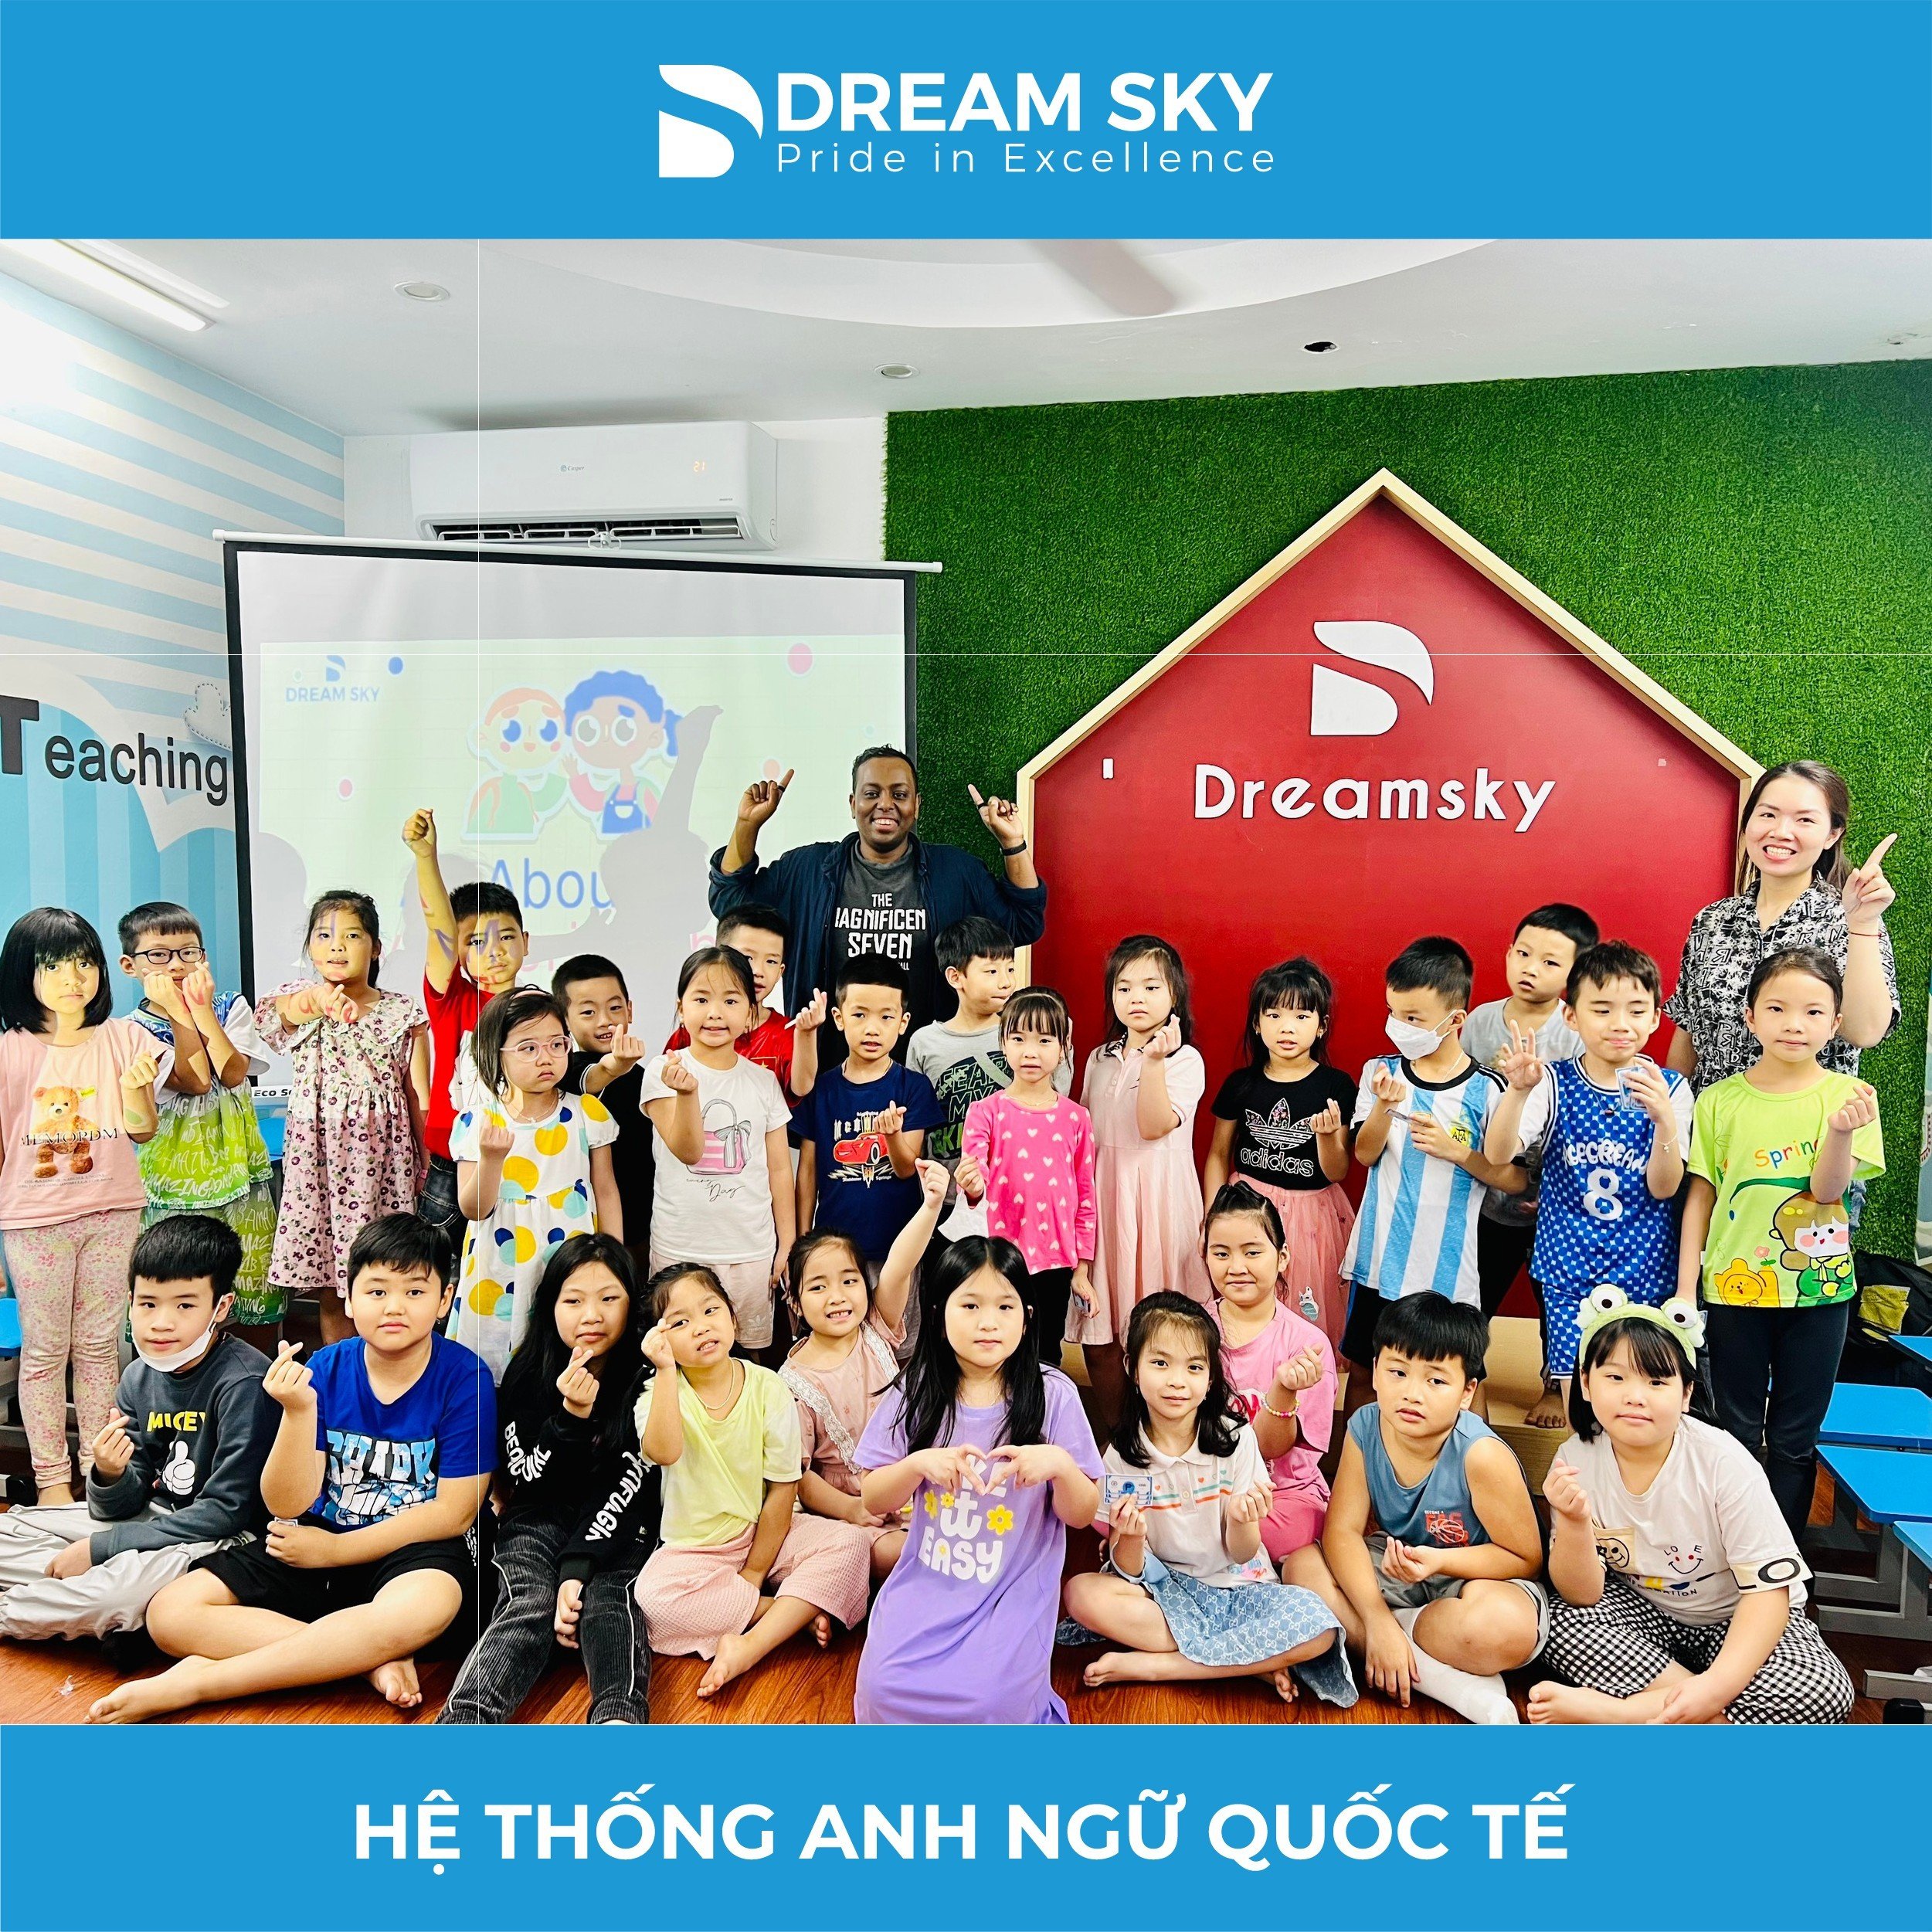 Không khí học tập chăm chỉ trong tiết học tai Dream Sky